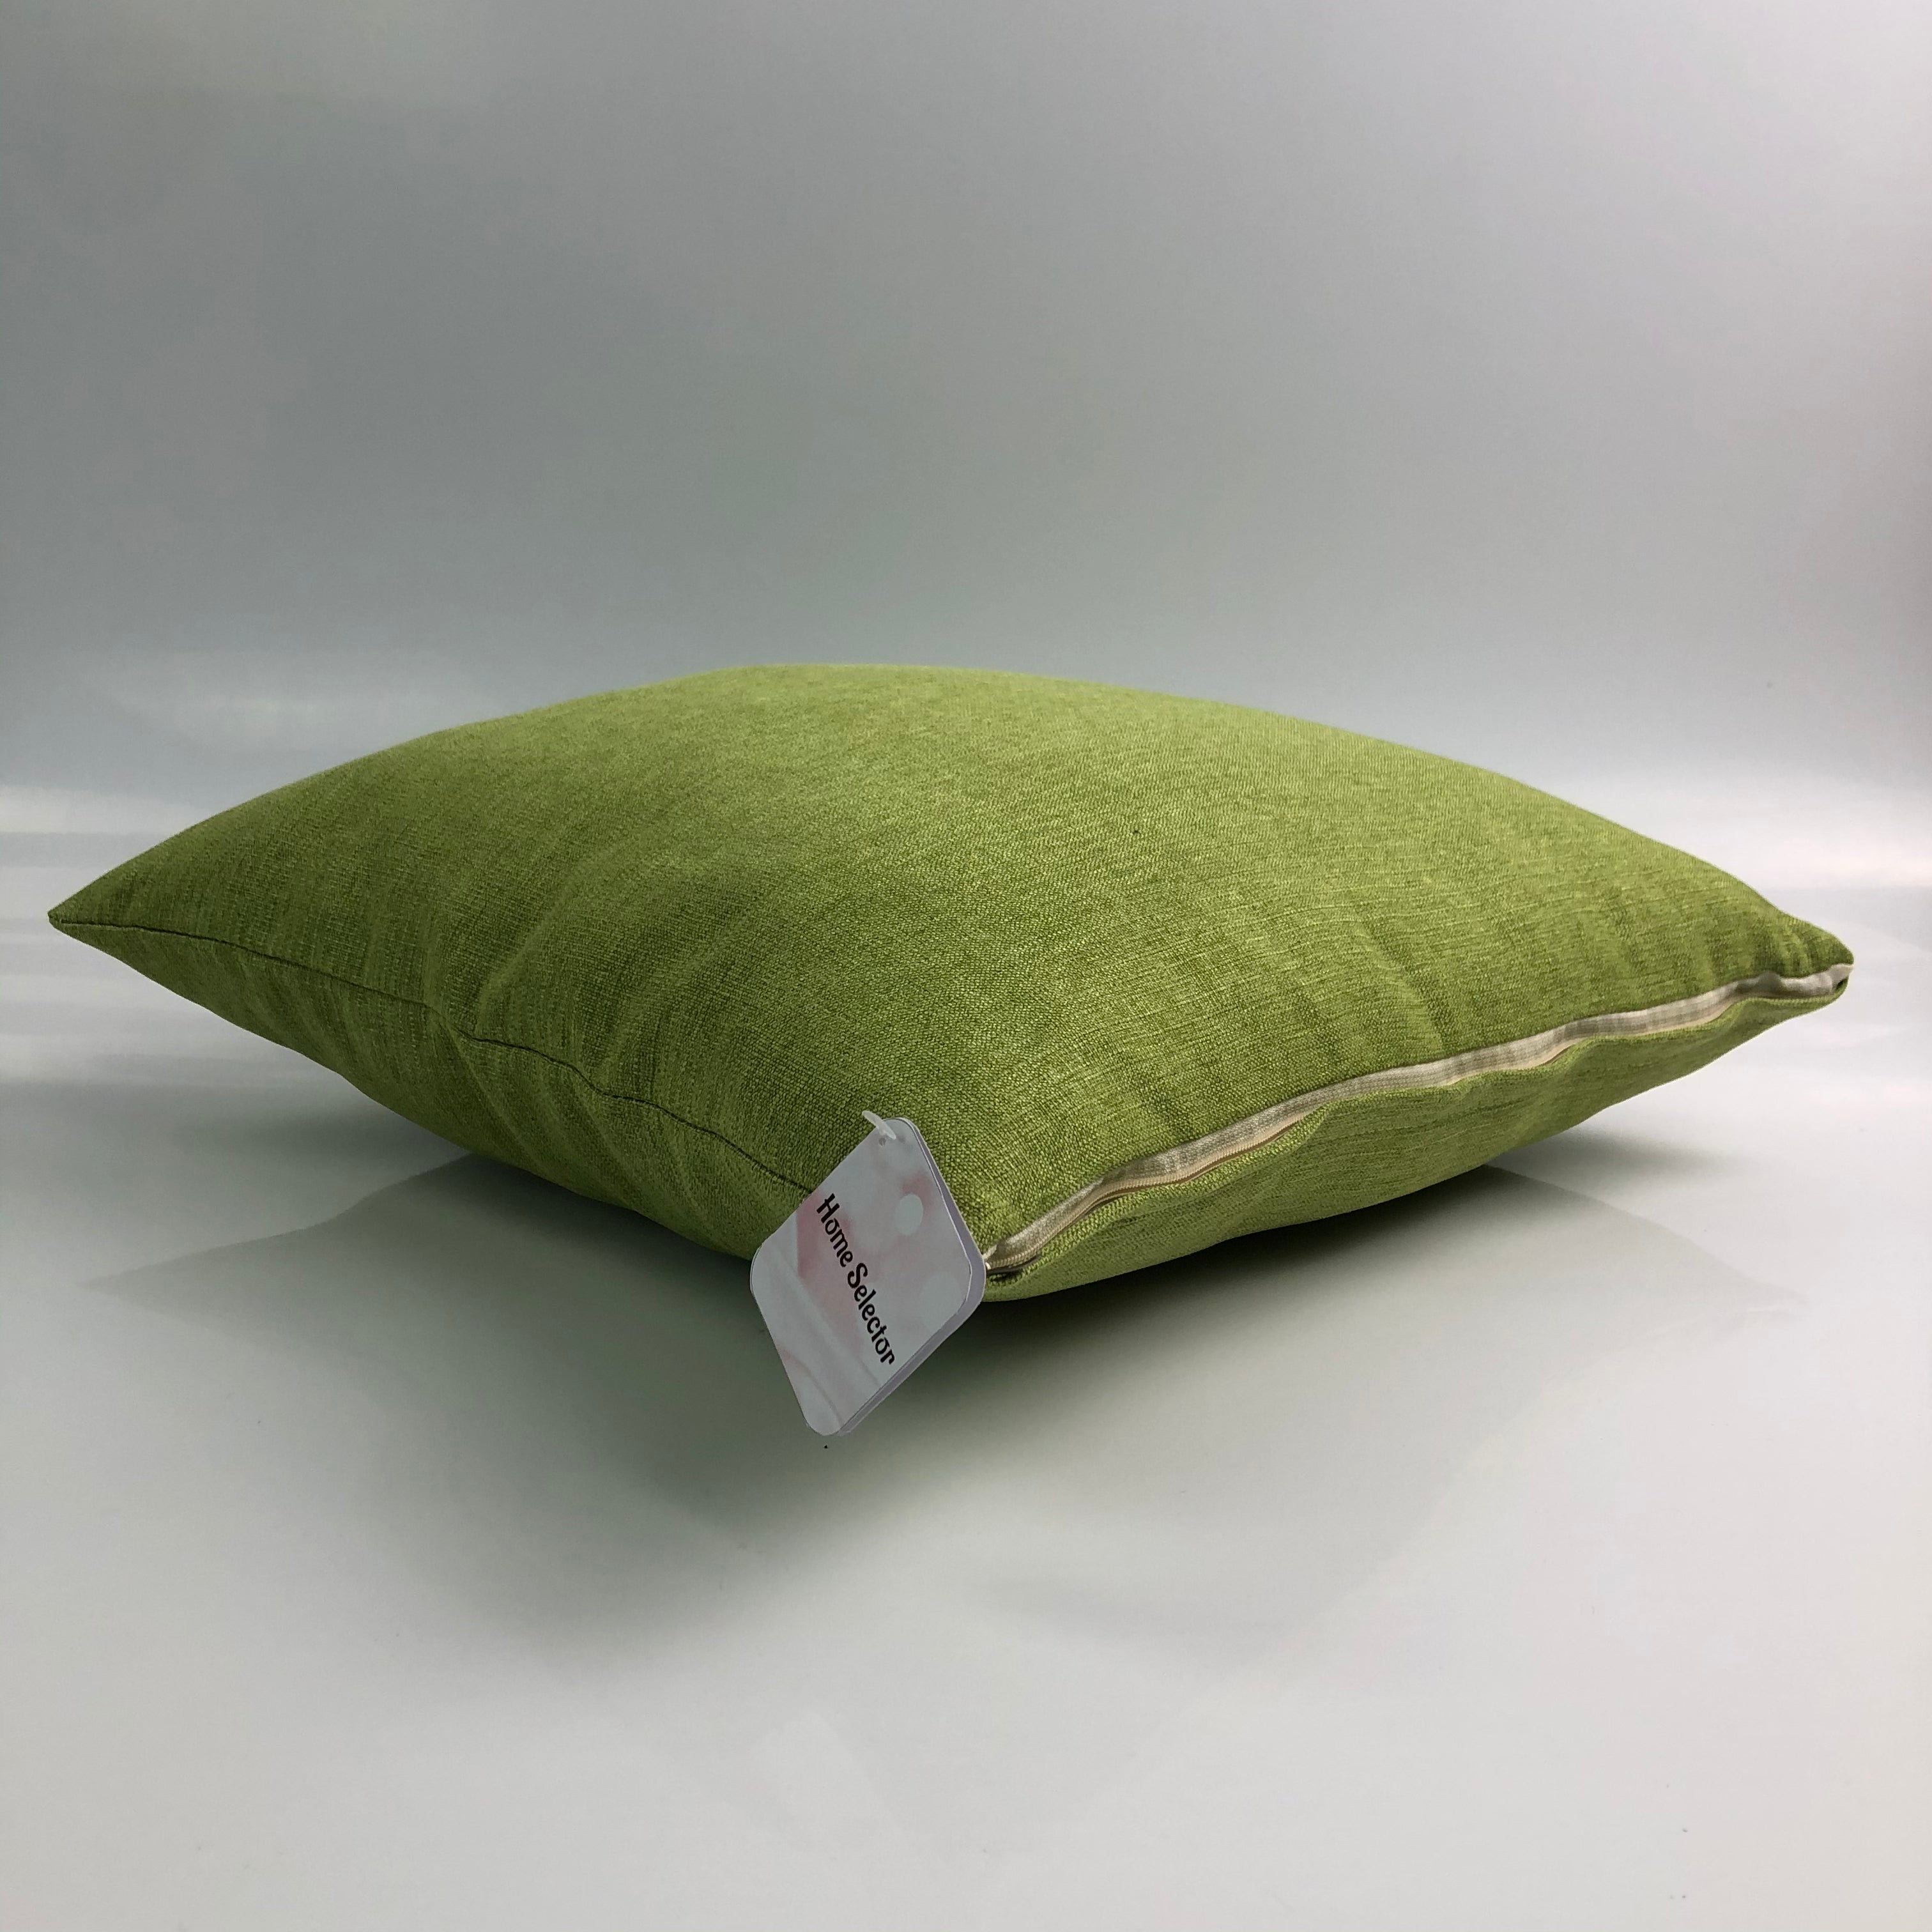 Home Selector Modern Sofa Throw Pillow - Glow Guards